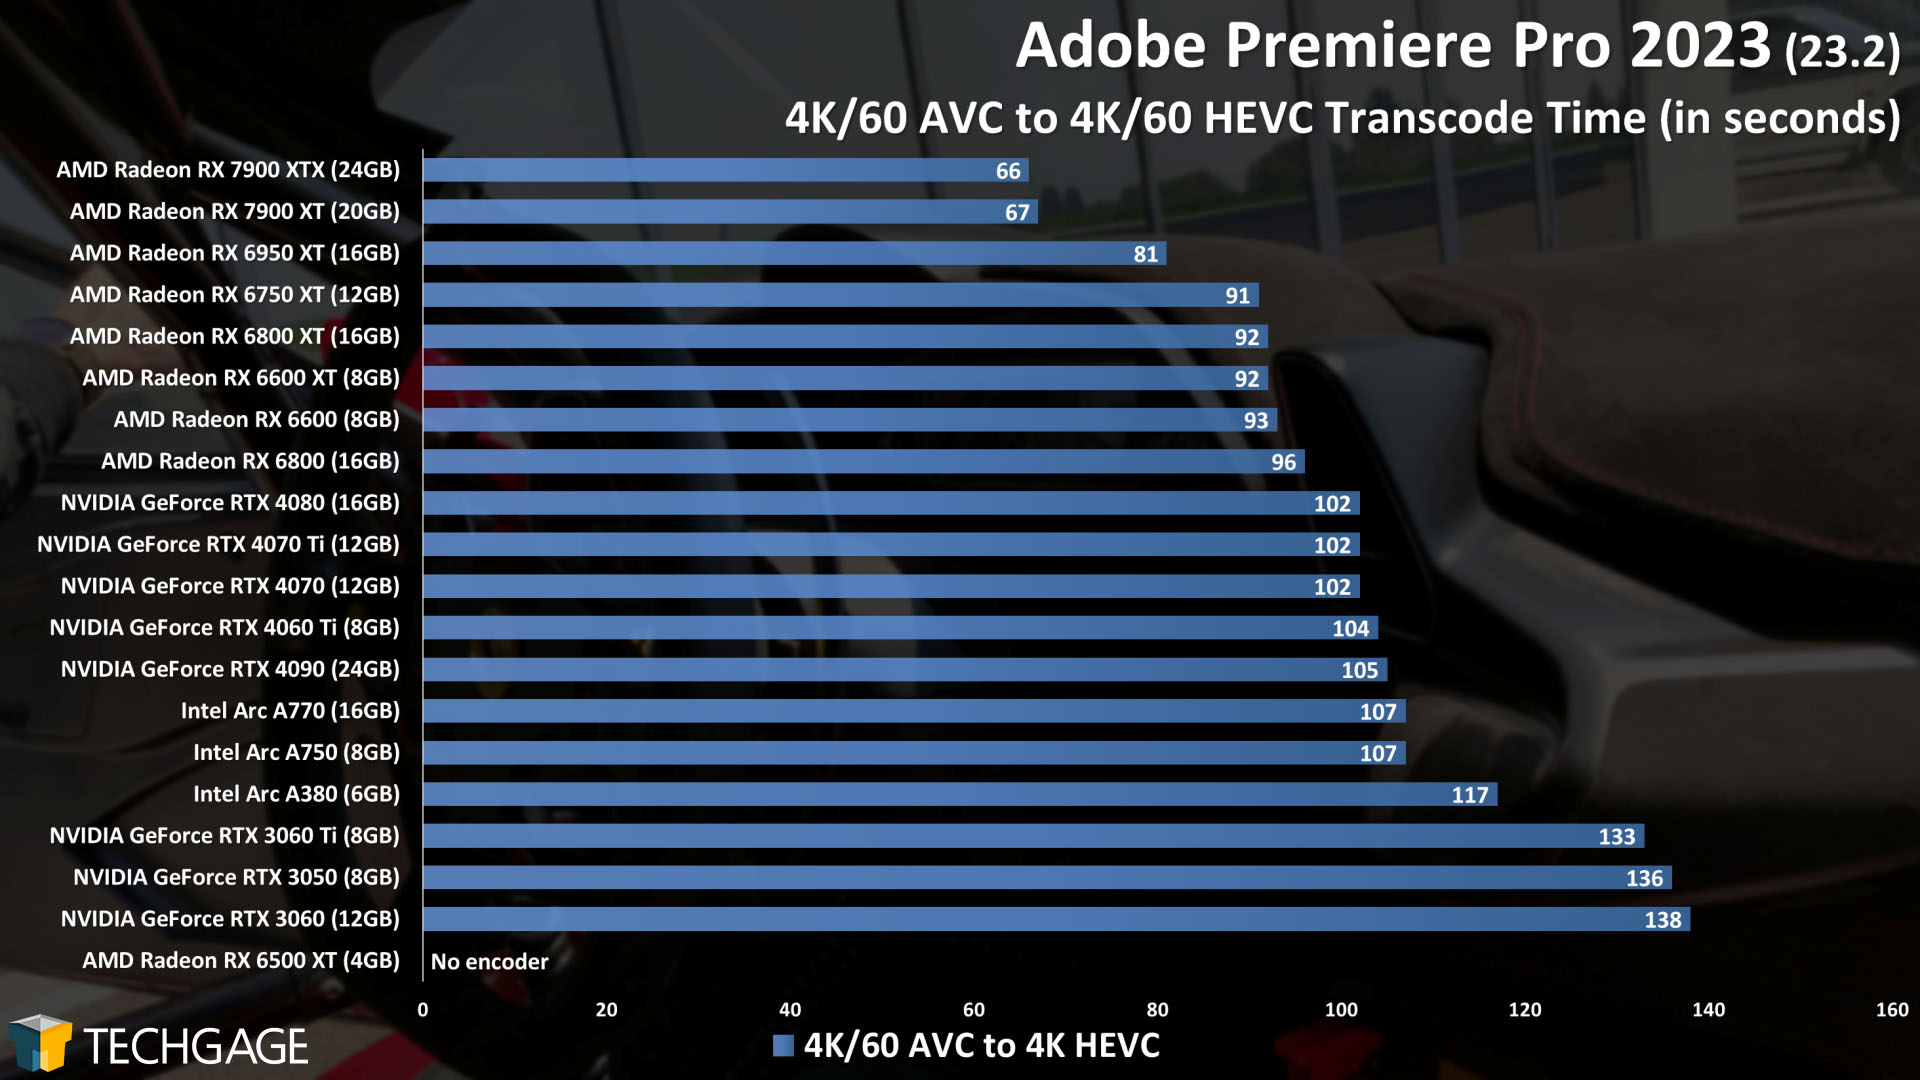 Adobe Premiere Pro - GPU Encoding Performance (4K60 AVC to 4K60 HEVC)